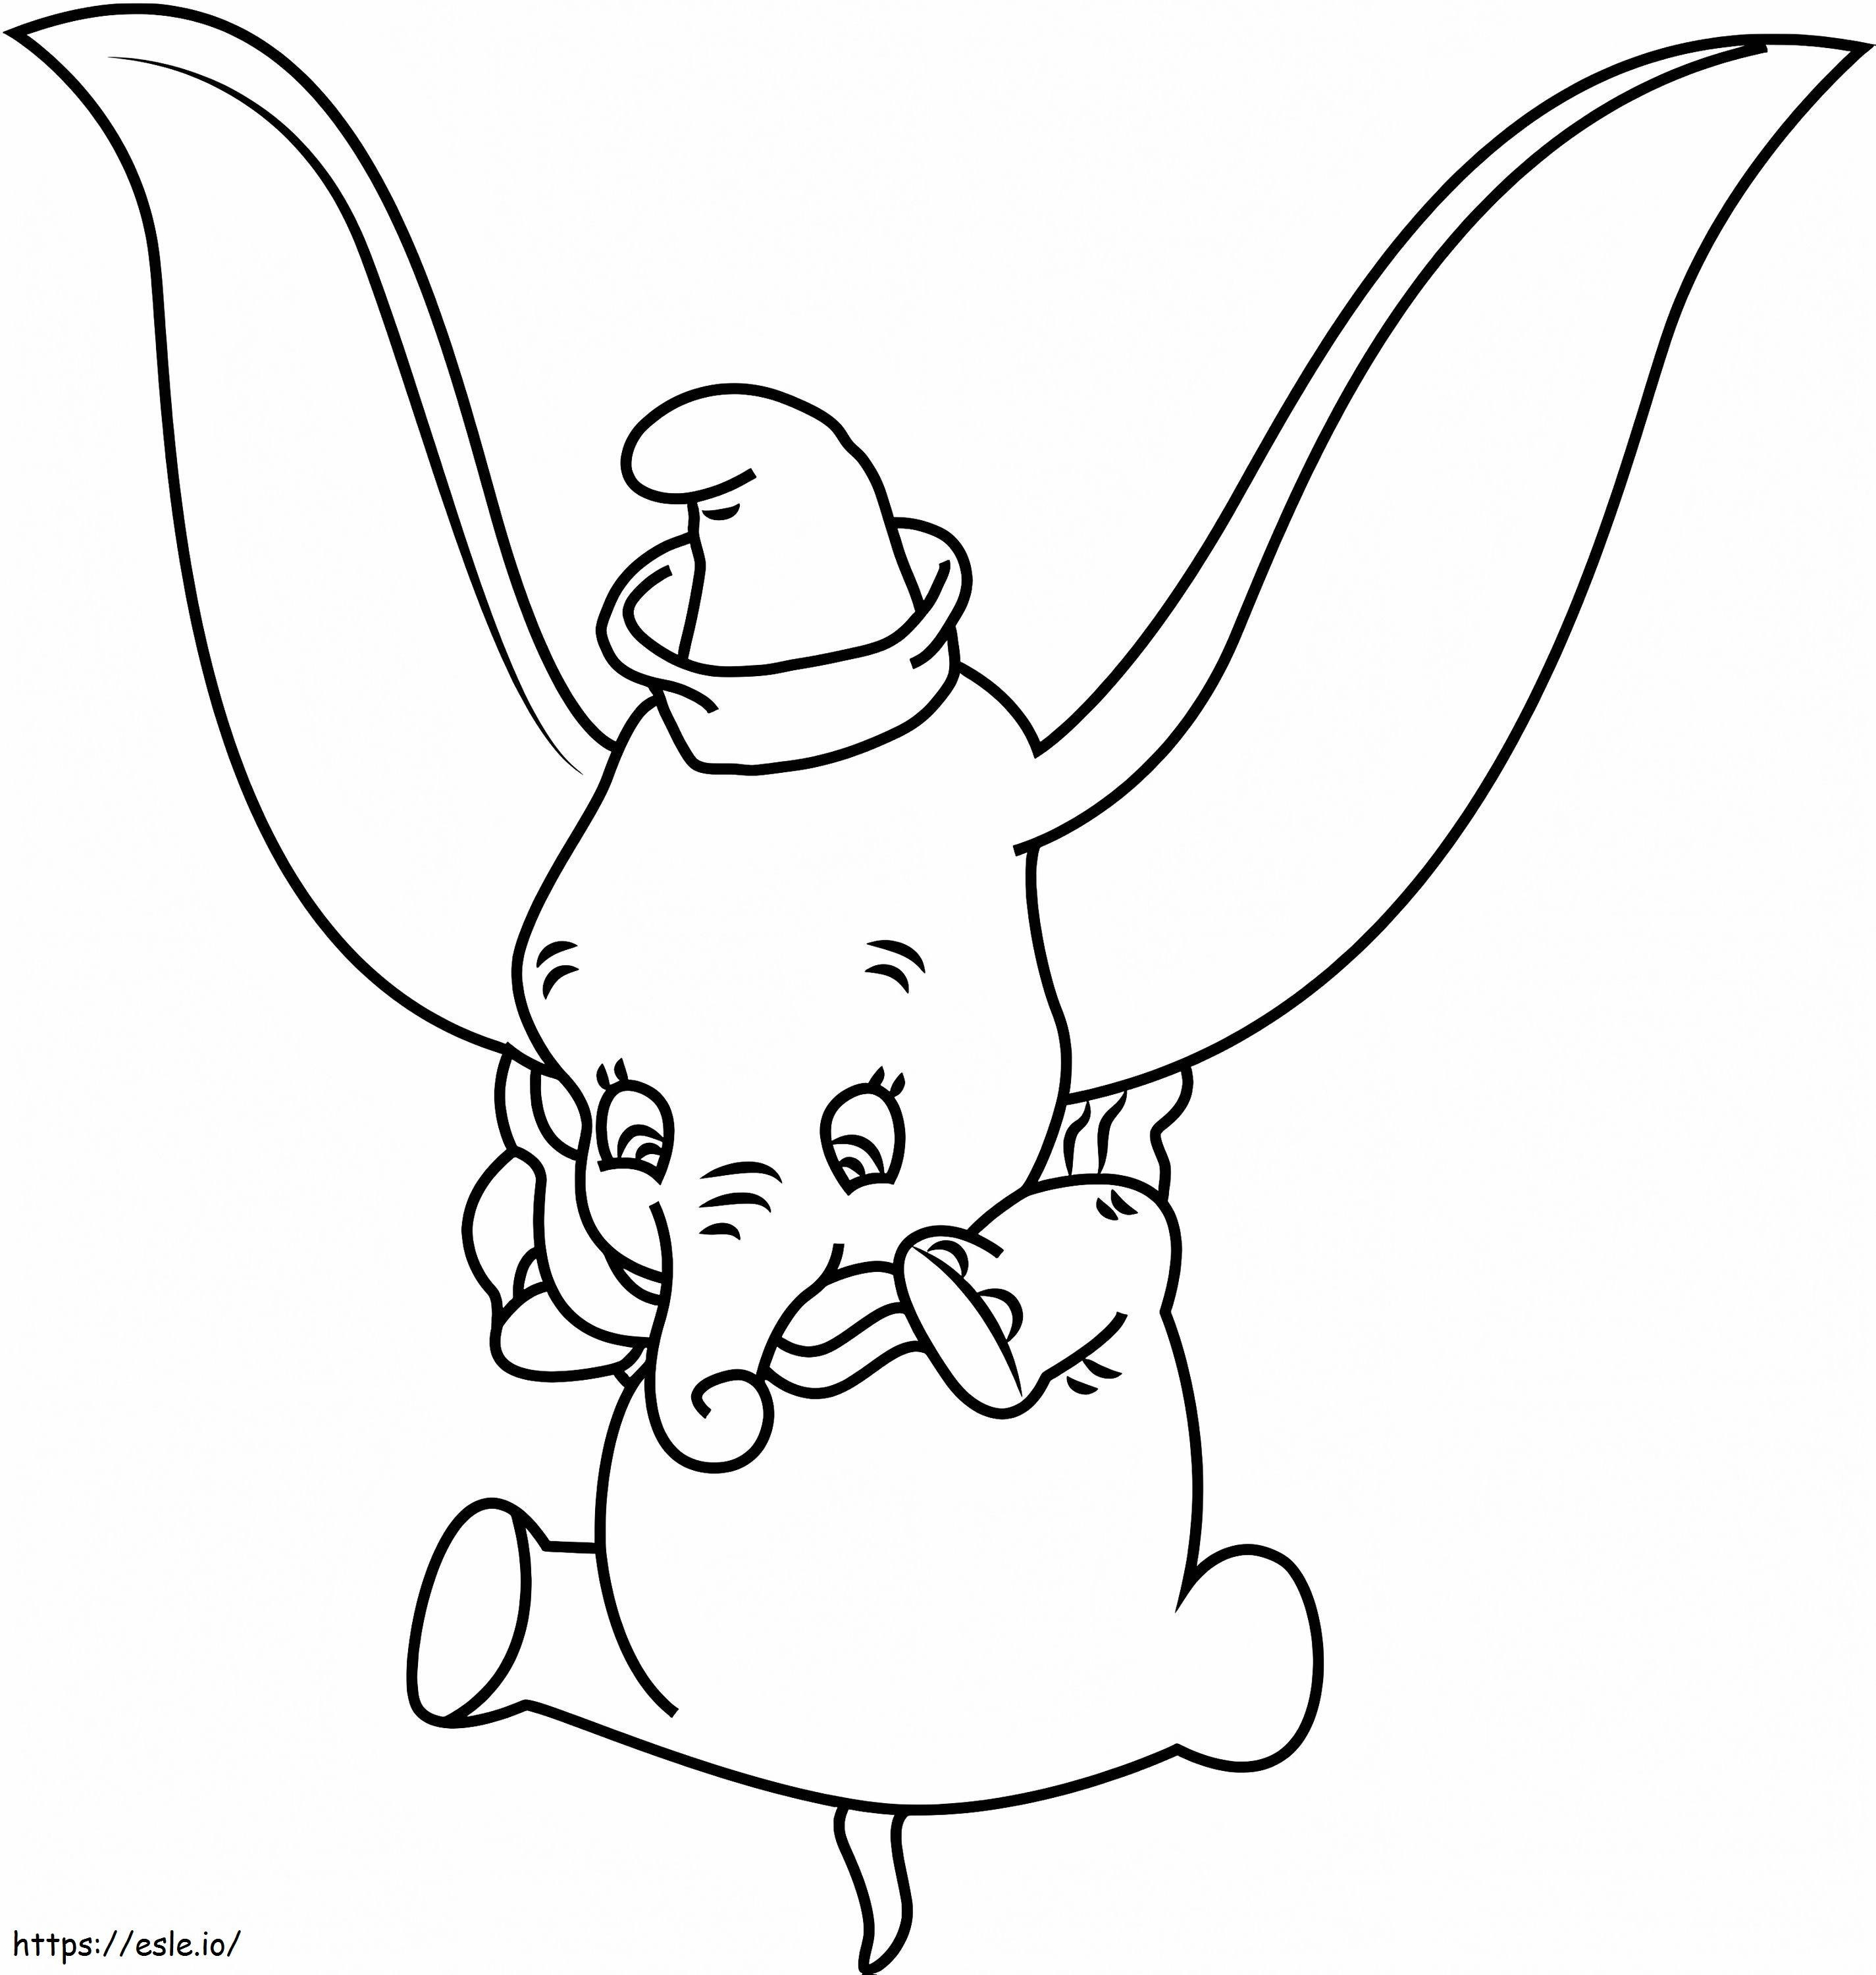 1530931285 Dumbo Jumping A4 de colorat